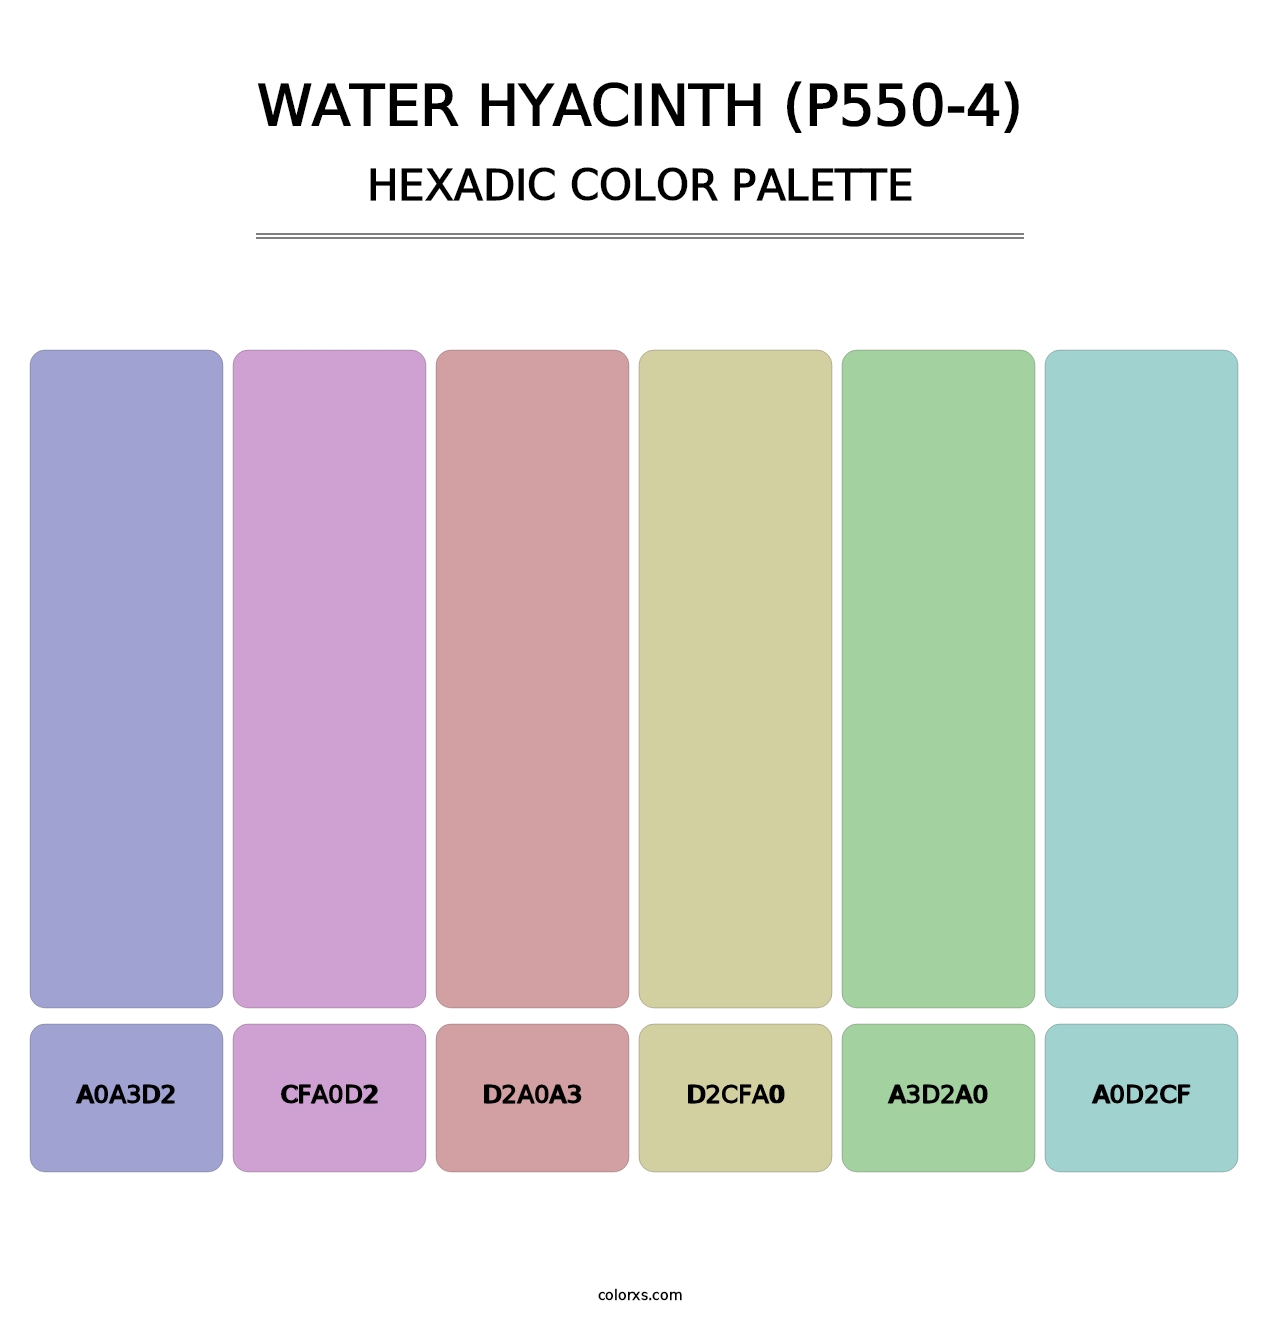 Water Hyacinth (P550-4) - Hexadic Color Palette